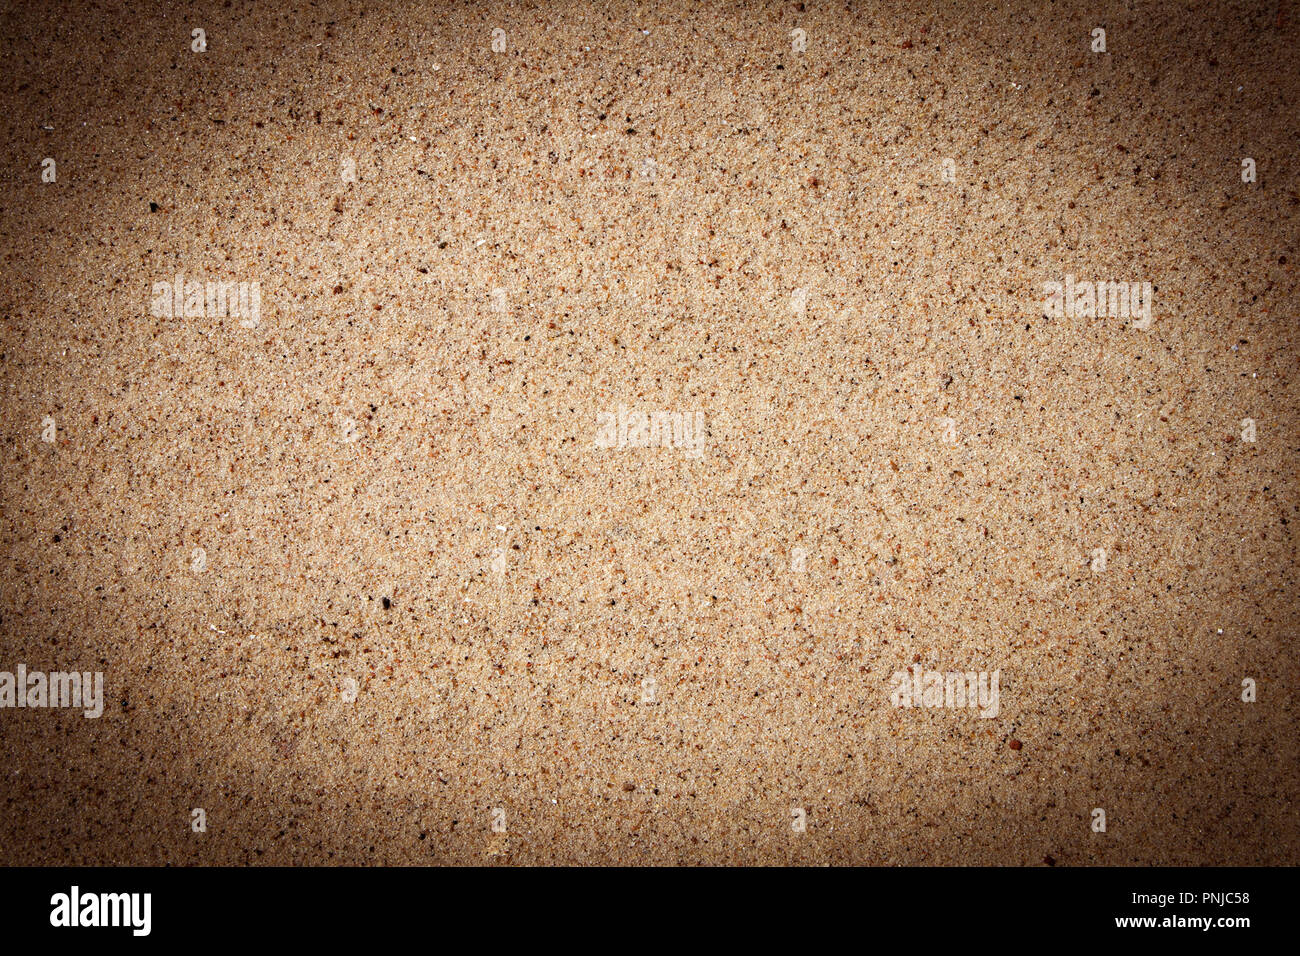 À grain fin brillant texture de sable, l'arrière-plan avec vignette sombre Banque D'Images